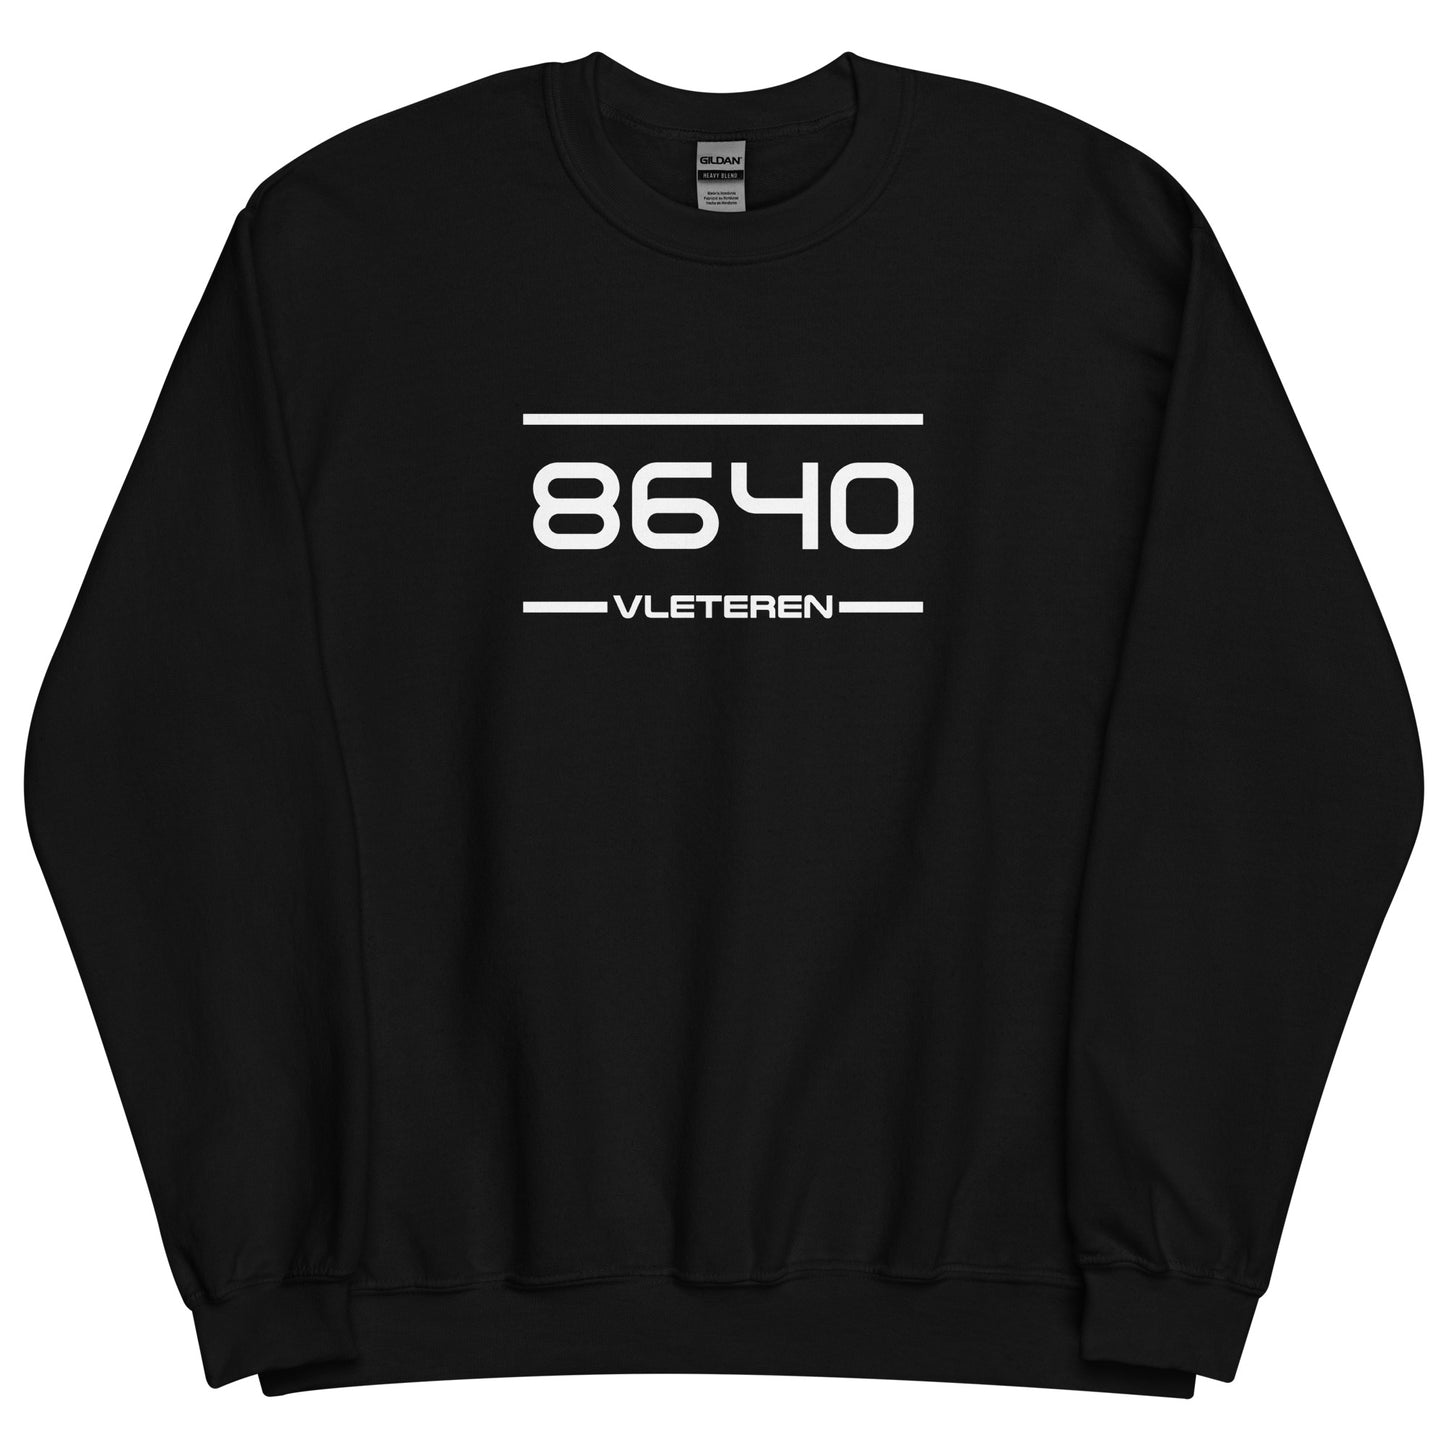 Sweater - 8640 - Vleteren (M/V)